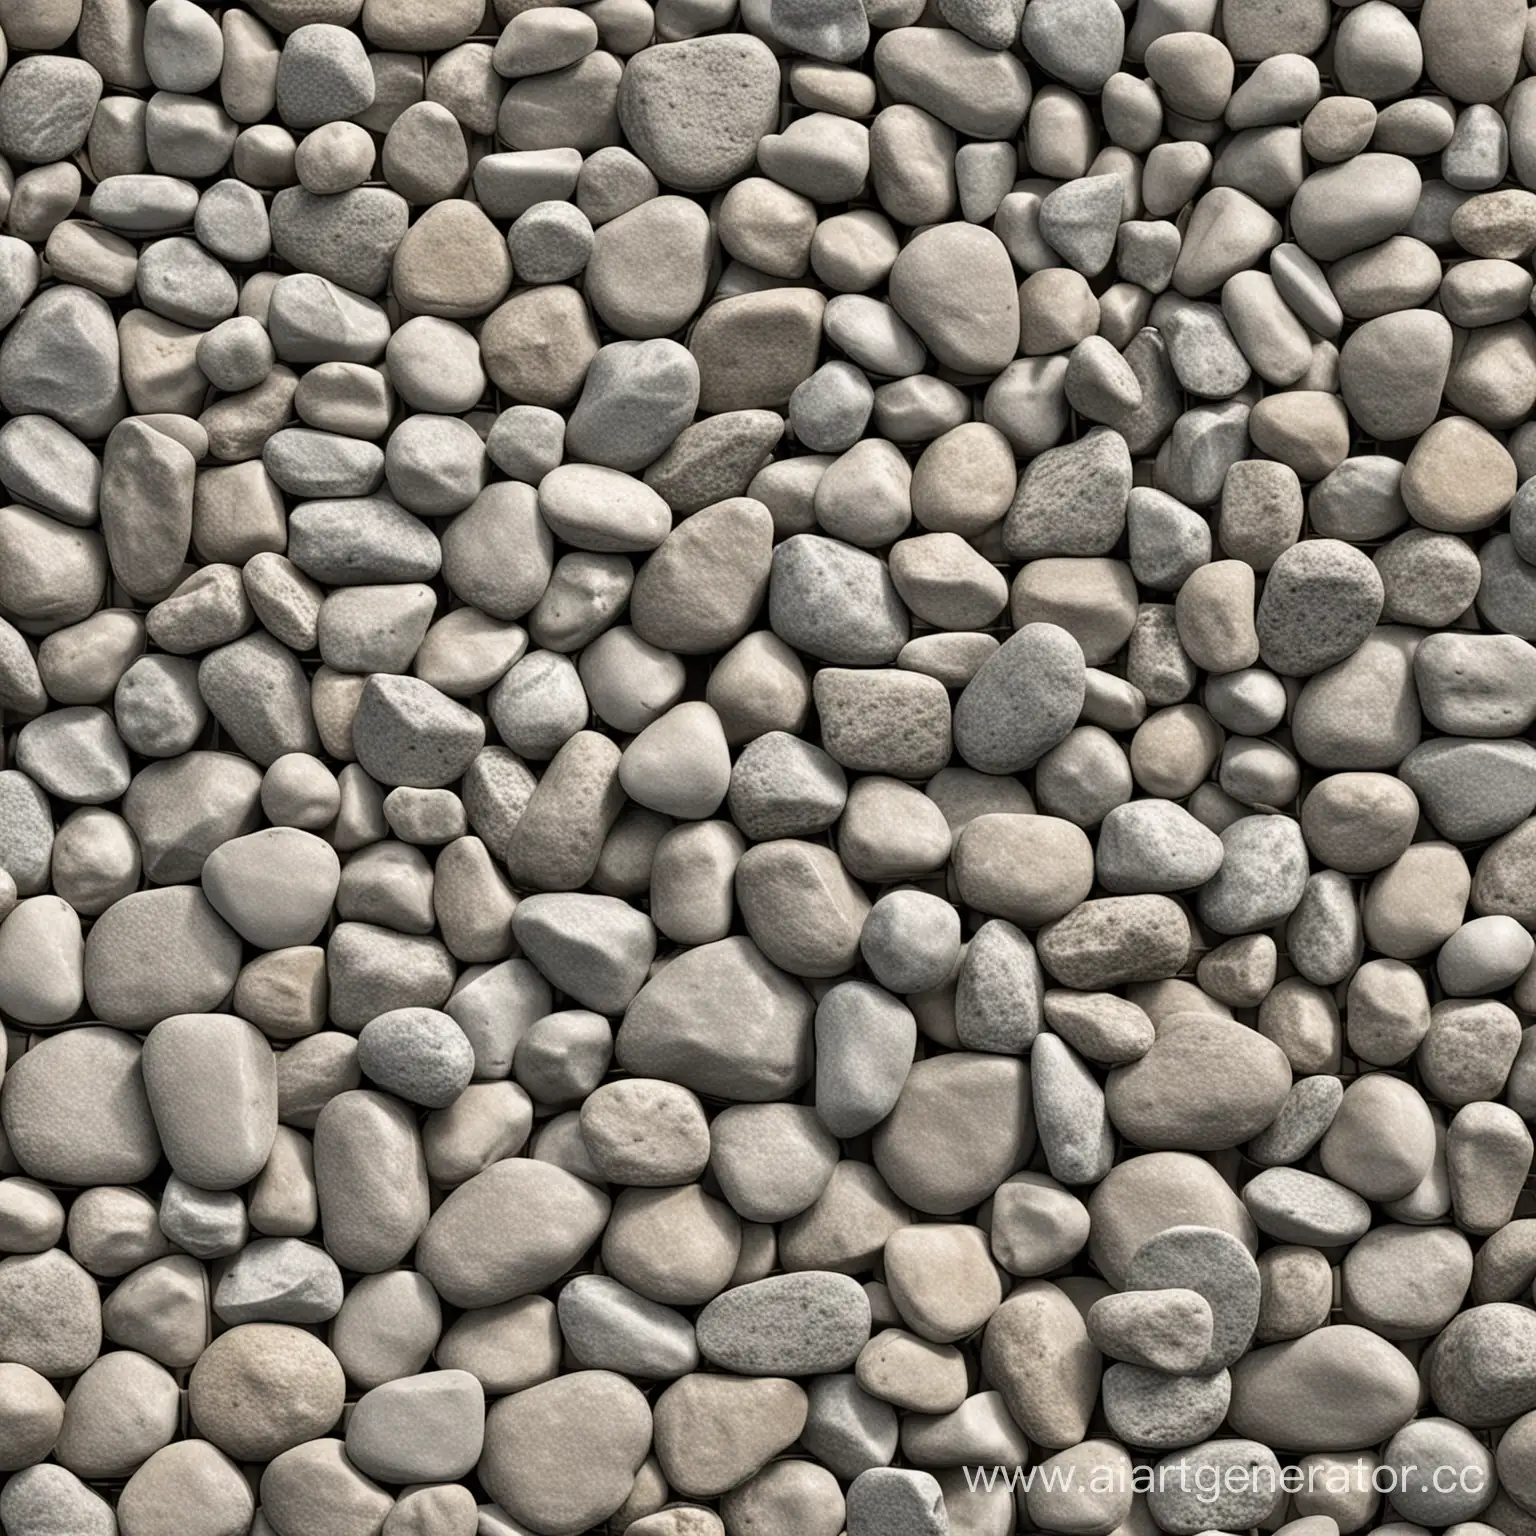 сделай изображение камней на конвейерной ленте, камни должны быть разного размера и формы, немного отличающейся текстуры и оттенка